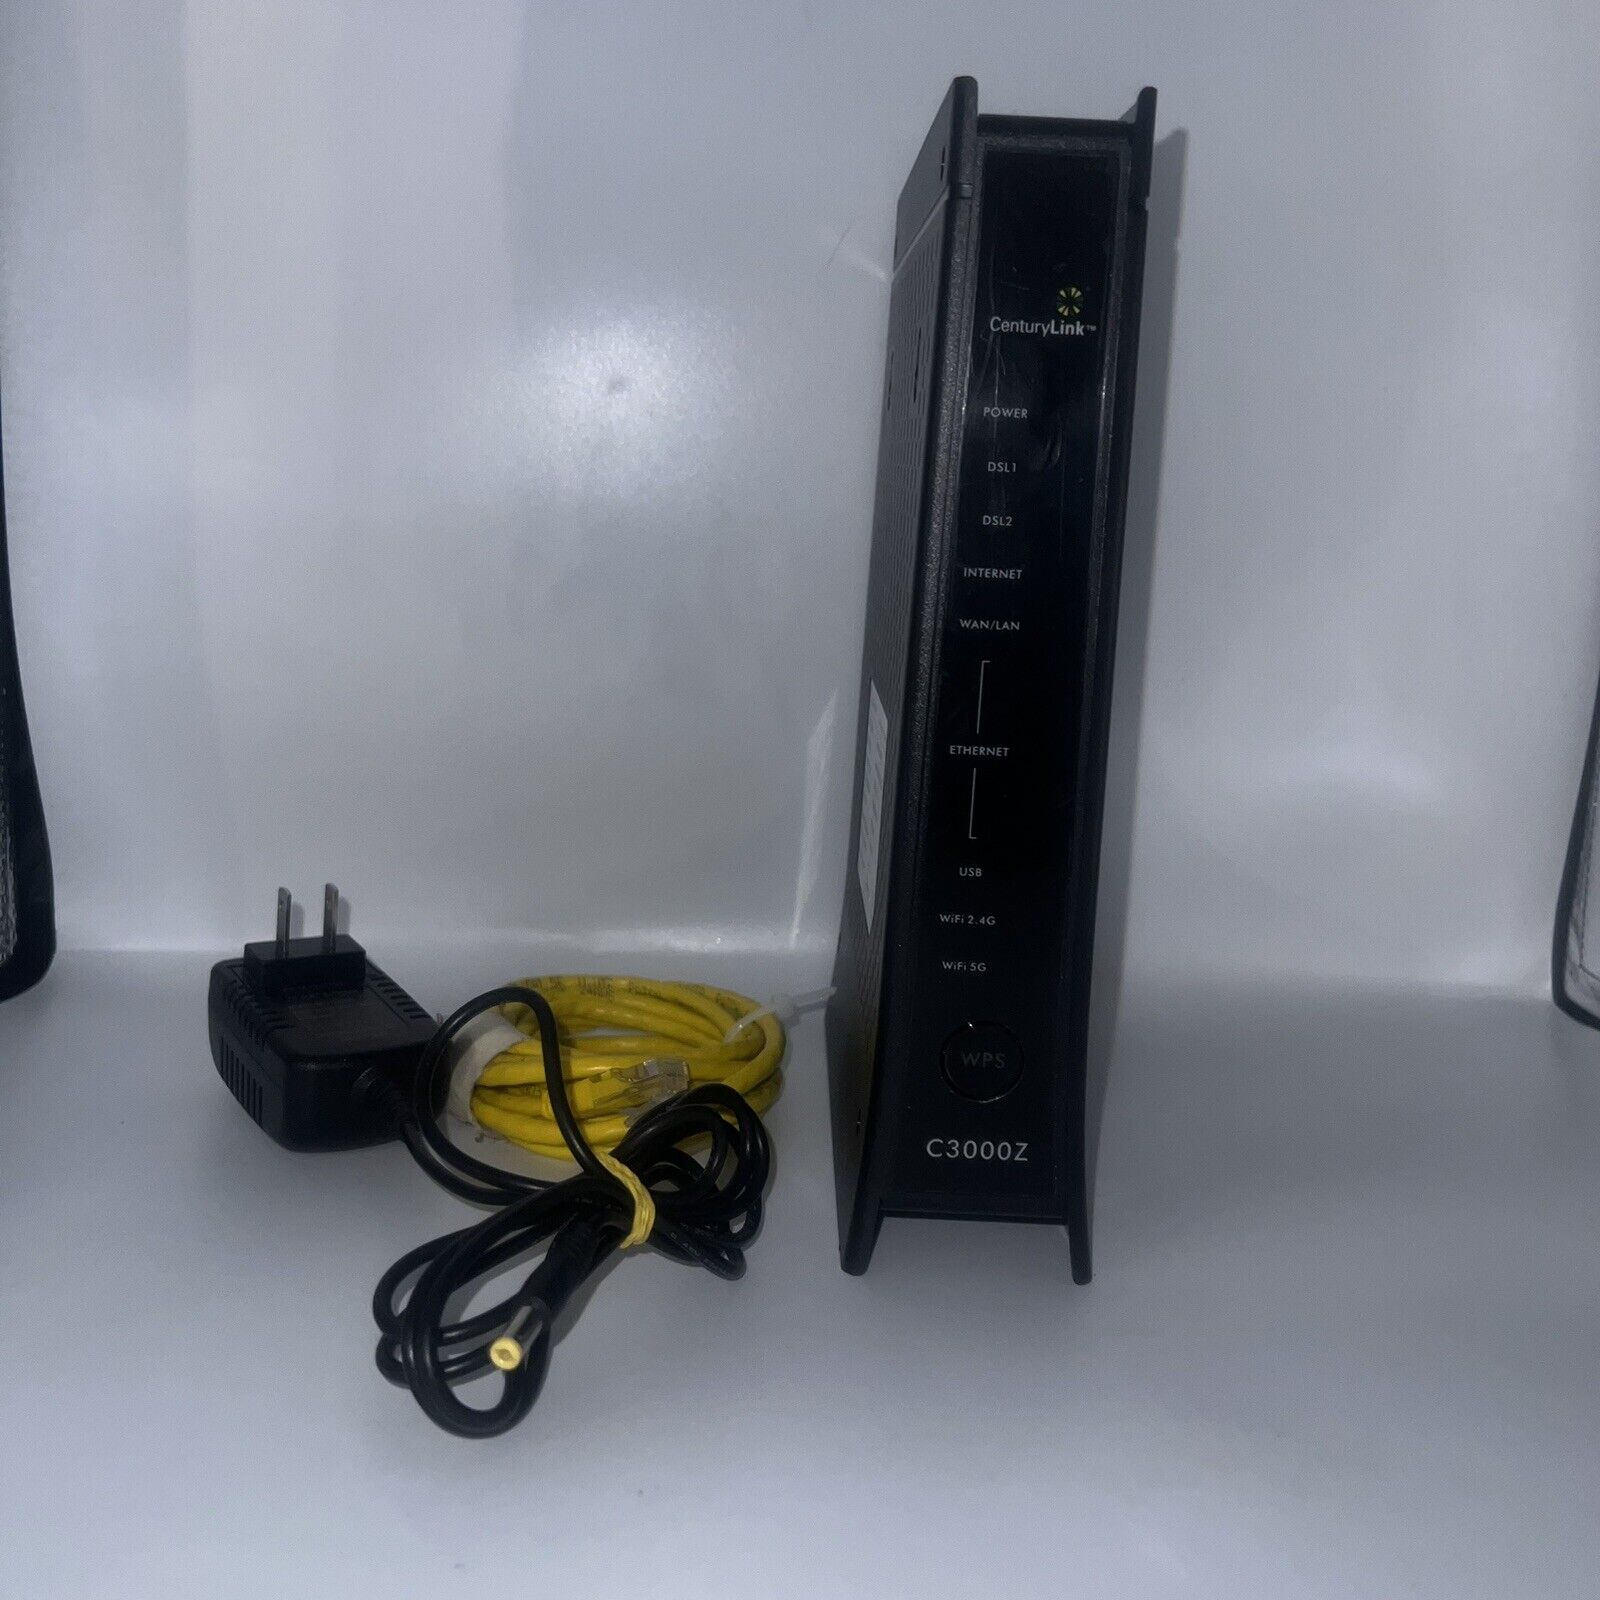 CenturyLink Approved C3000Z Zyxel Bonded 5ghz Wireless Modem / Router